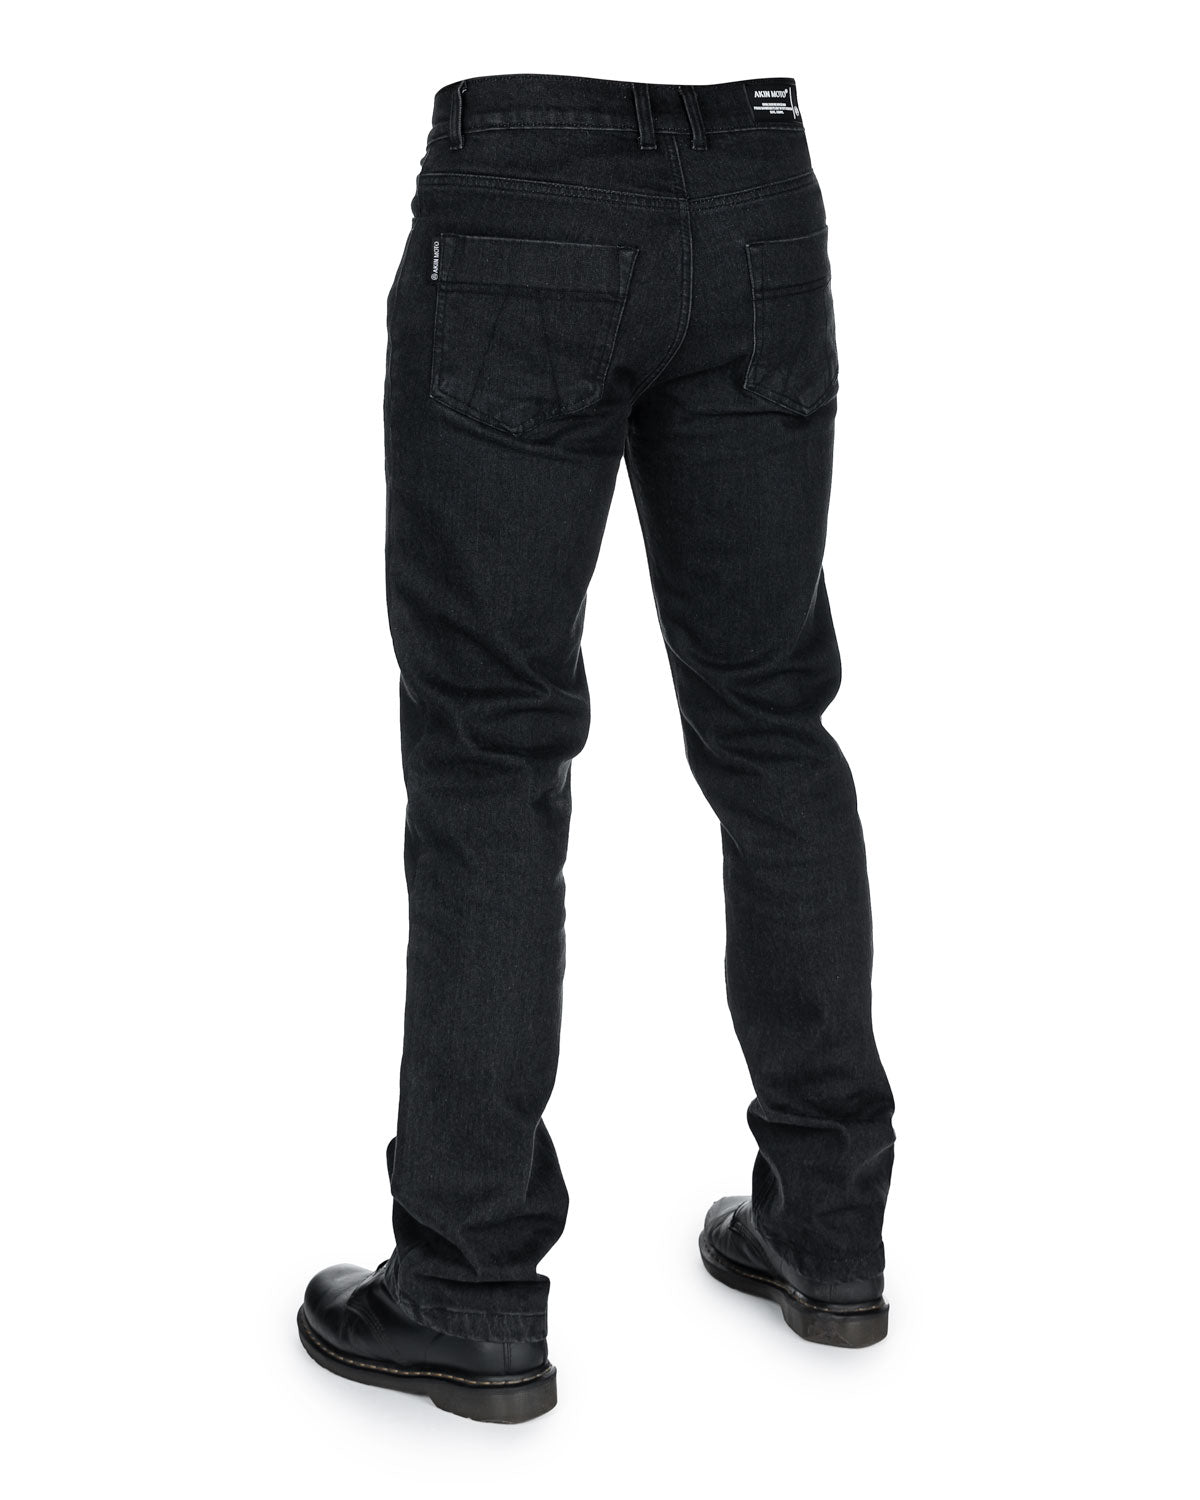 Versace black denim jeans - JAGUAR LUXURY FASHION